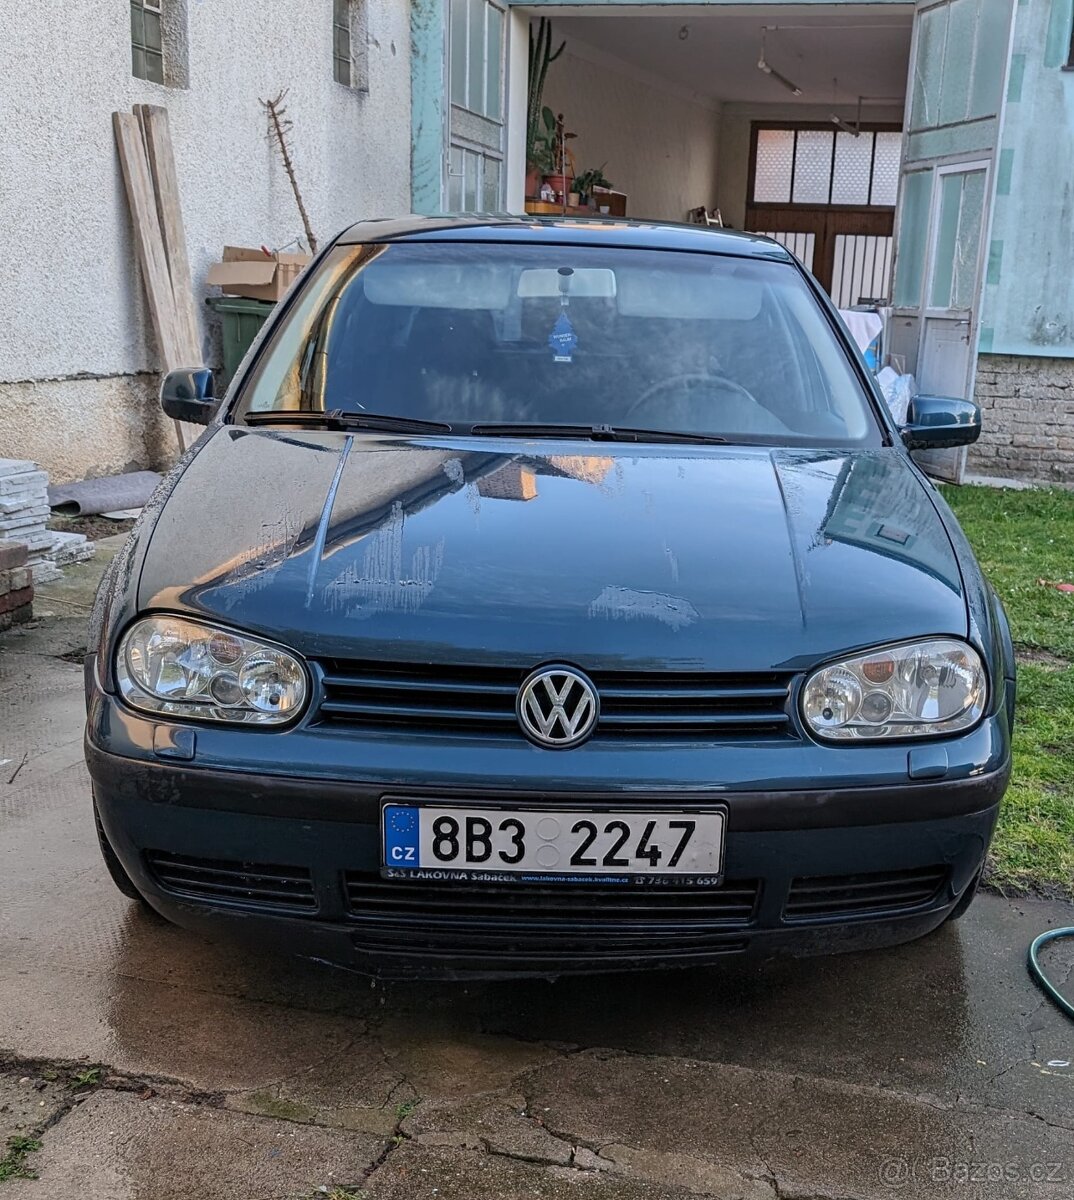 VW Golf IV 1.6 fsi